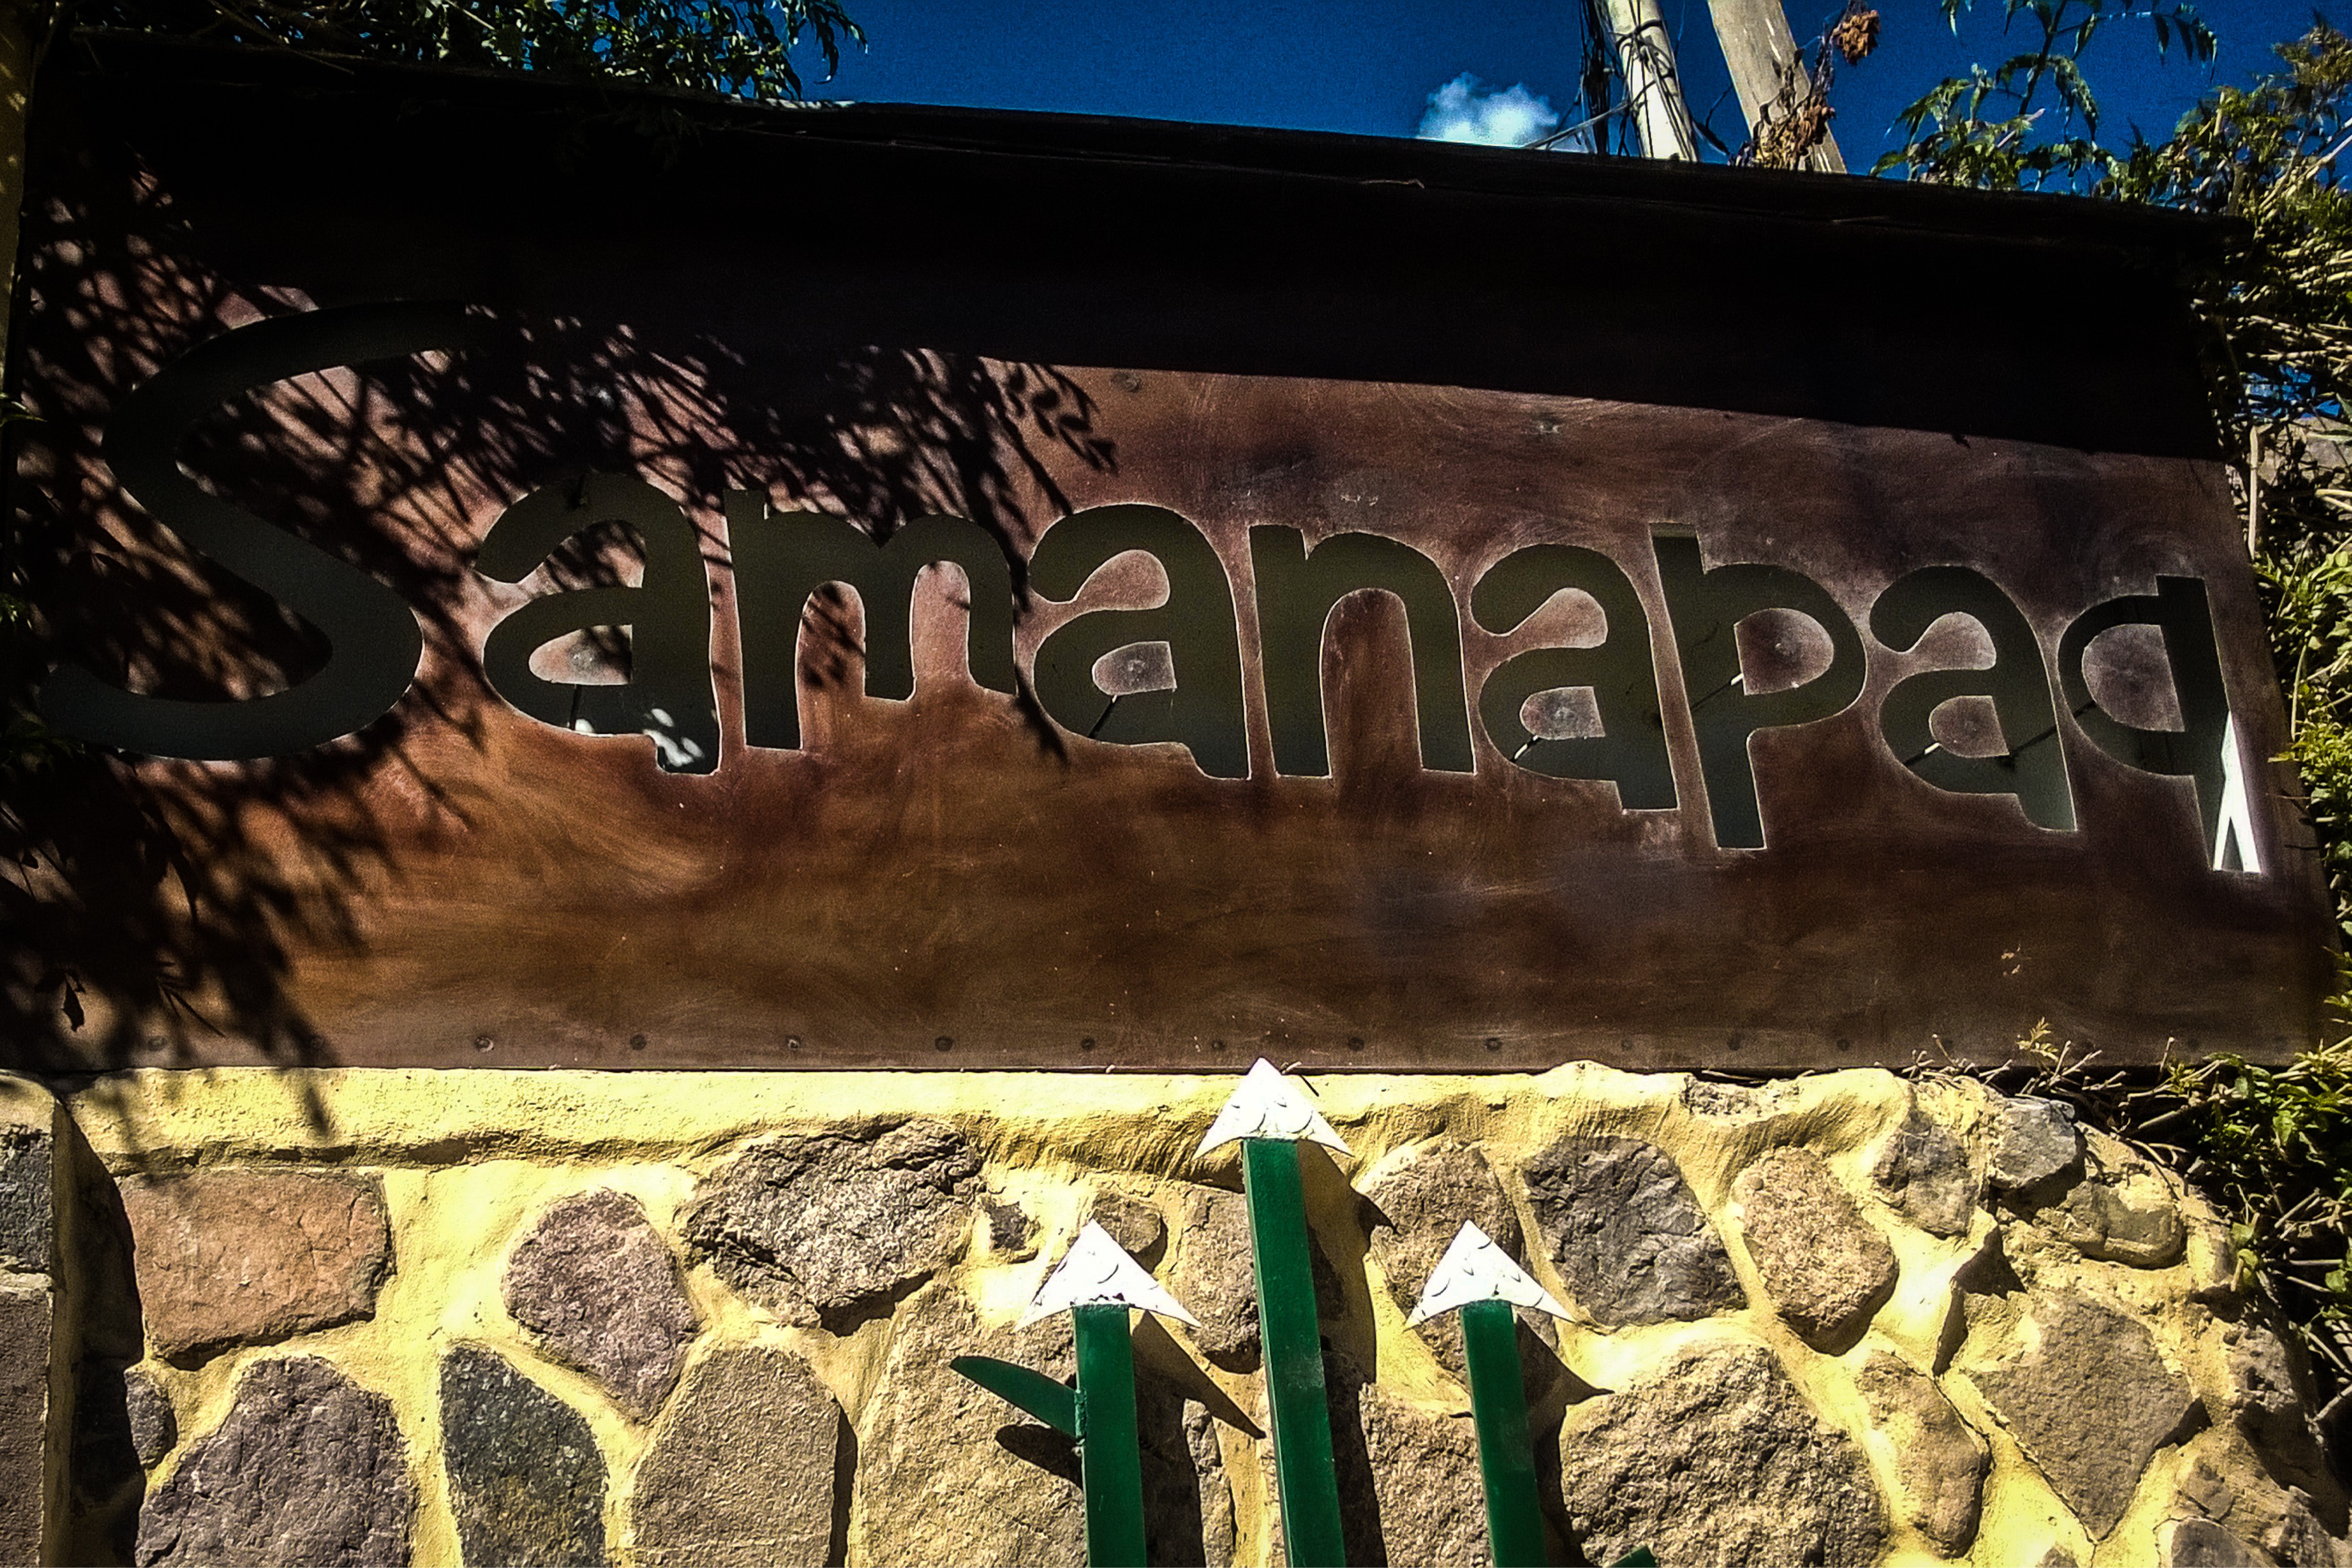 Hotel Samanapaq sign